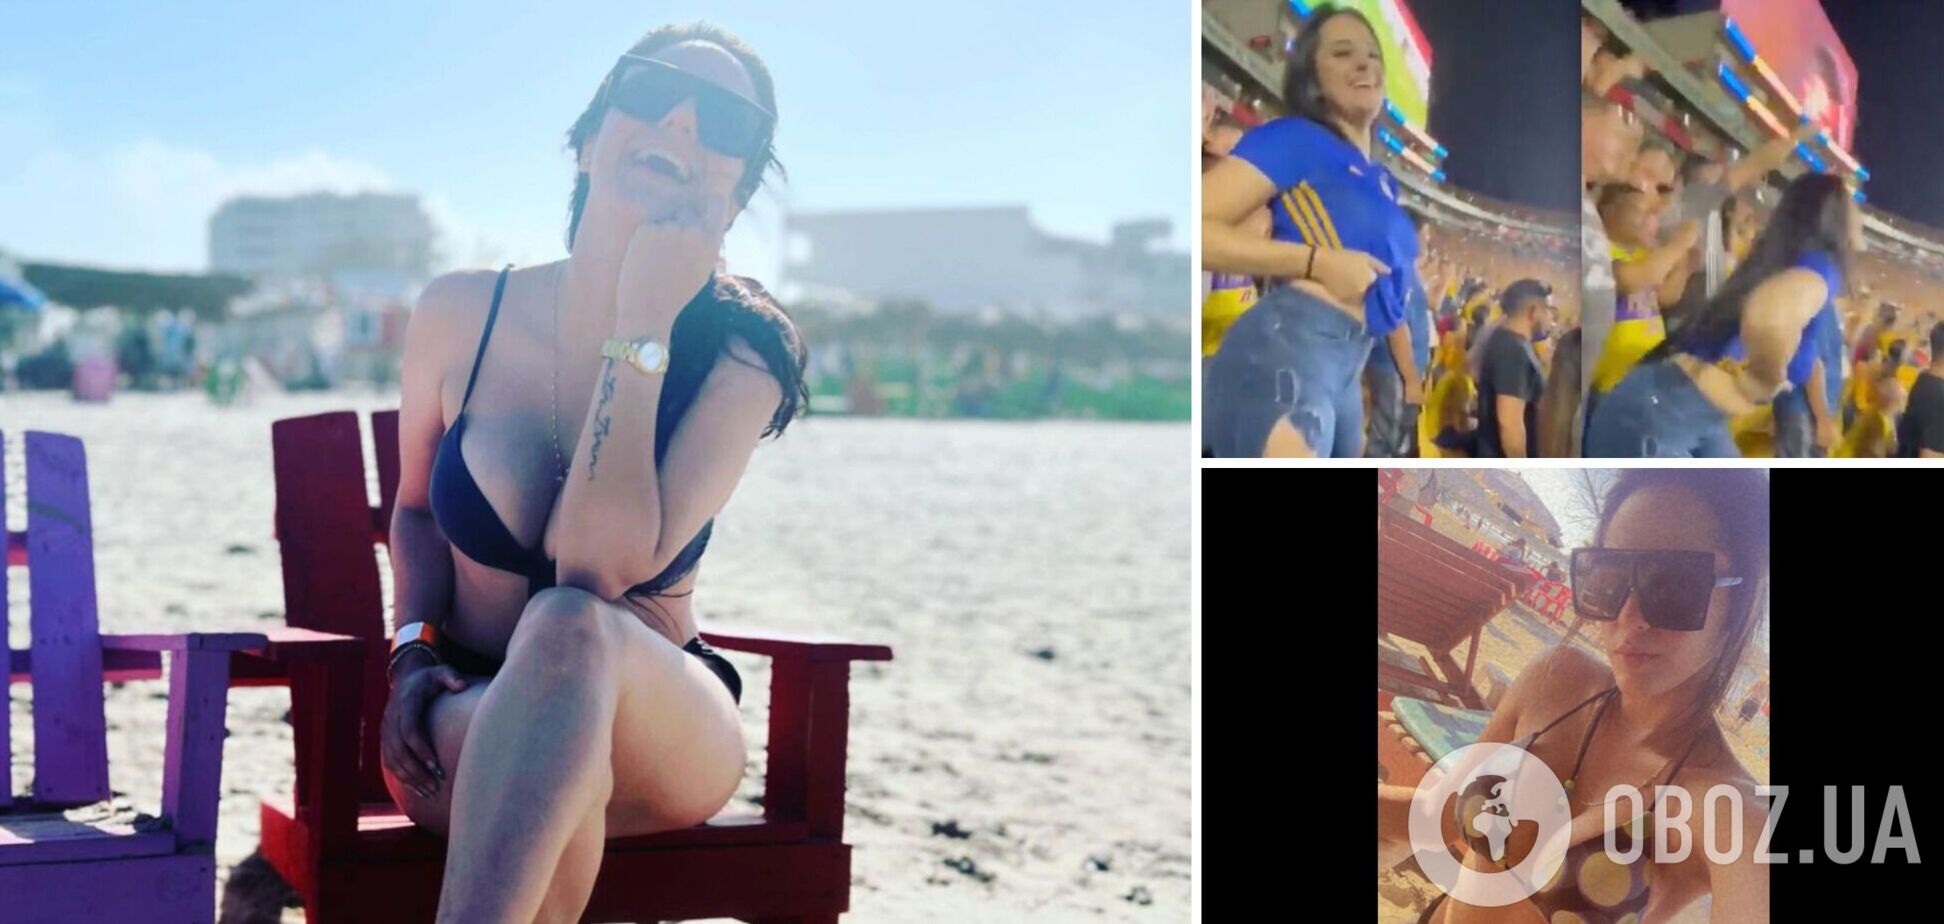 Мексиканская фанатка разделась на трибуне, празднуя забитый гол, и собрала 5 млн просмотров. Видео